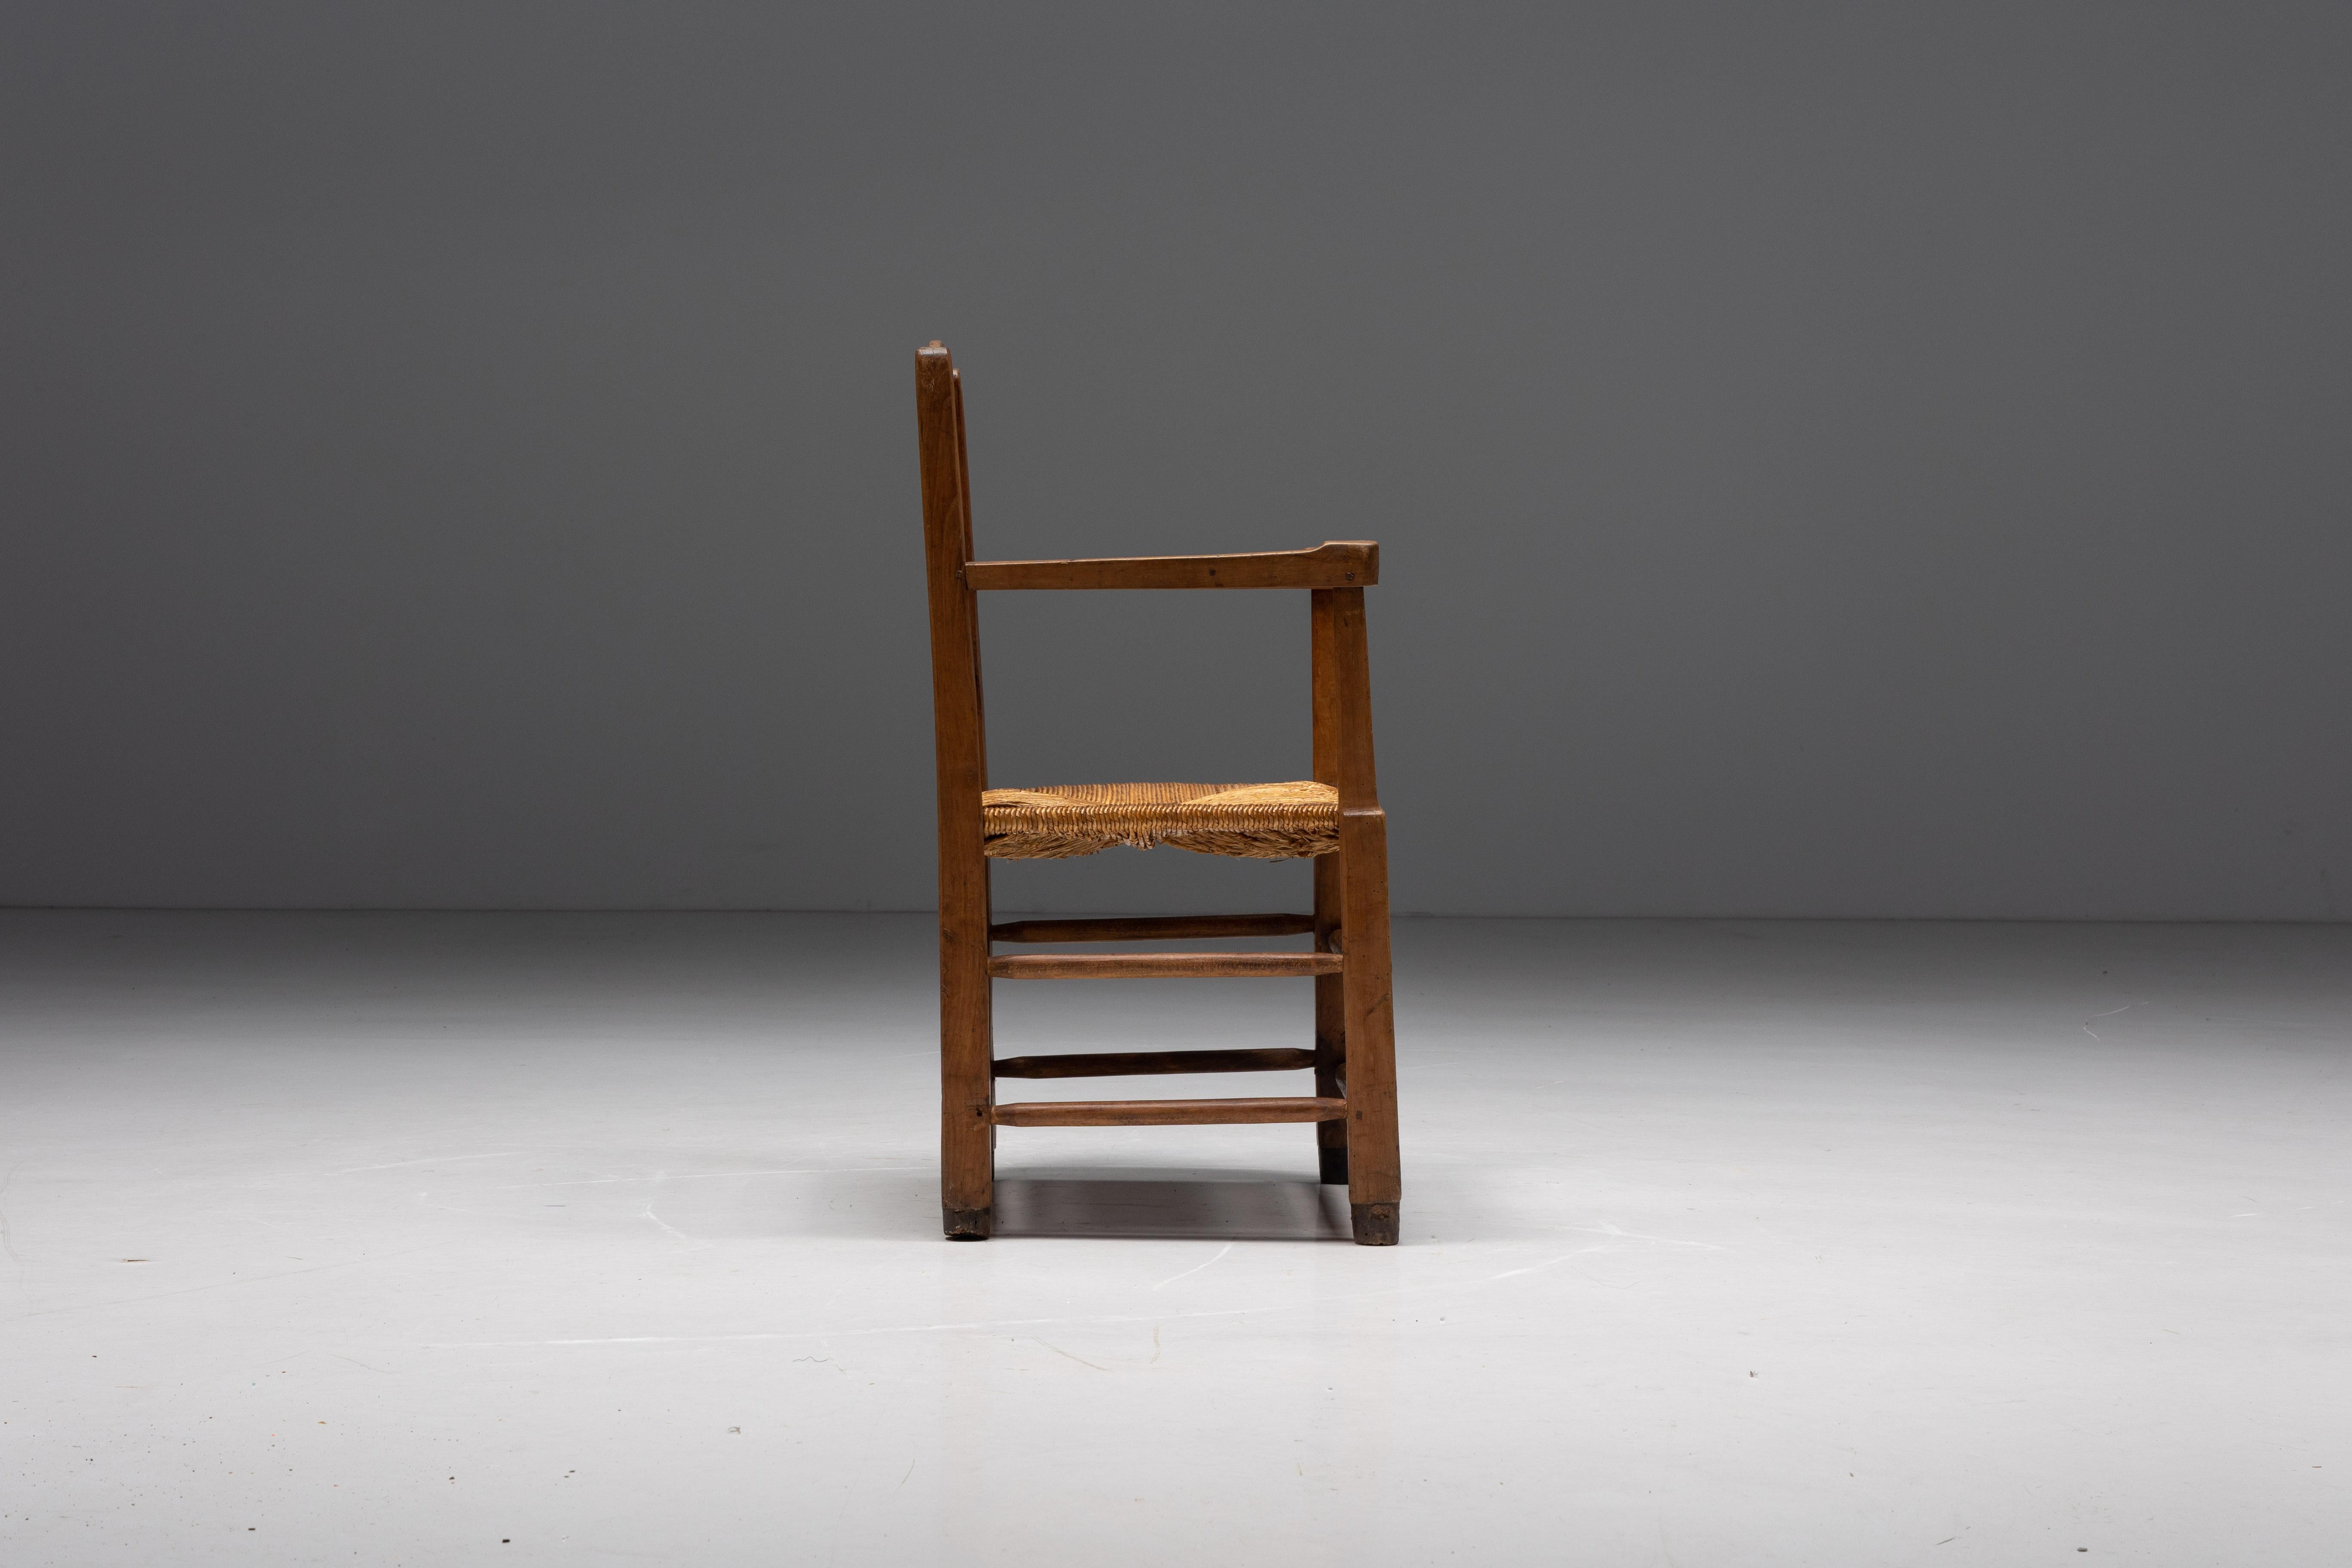 fauteuil rustique bois et paille